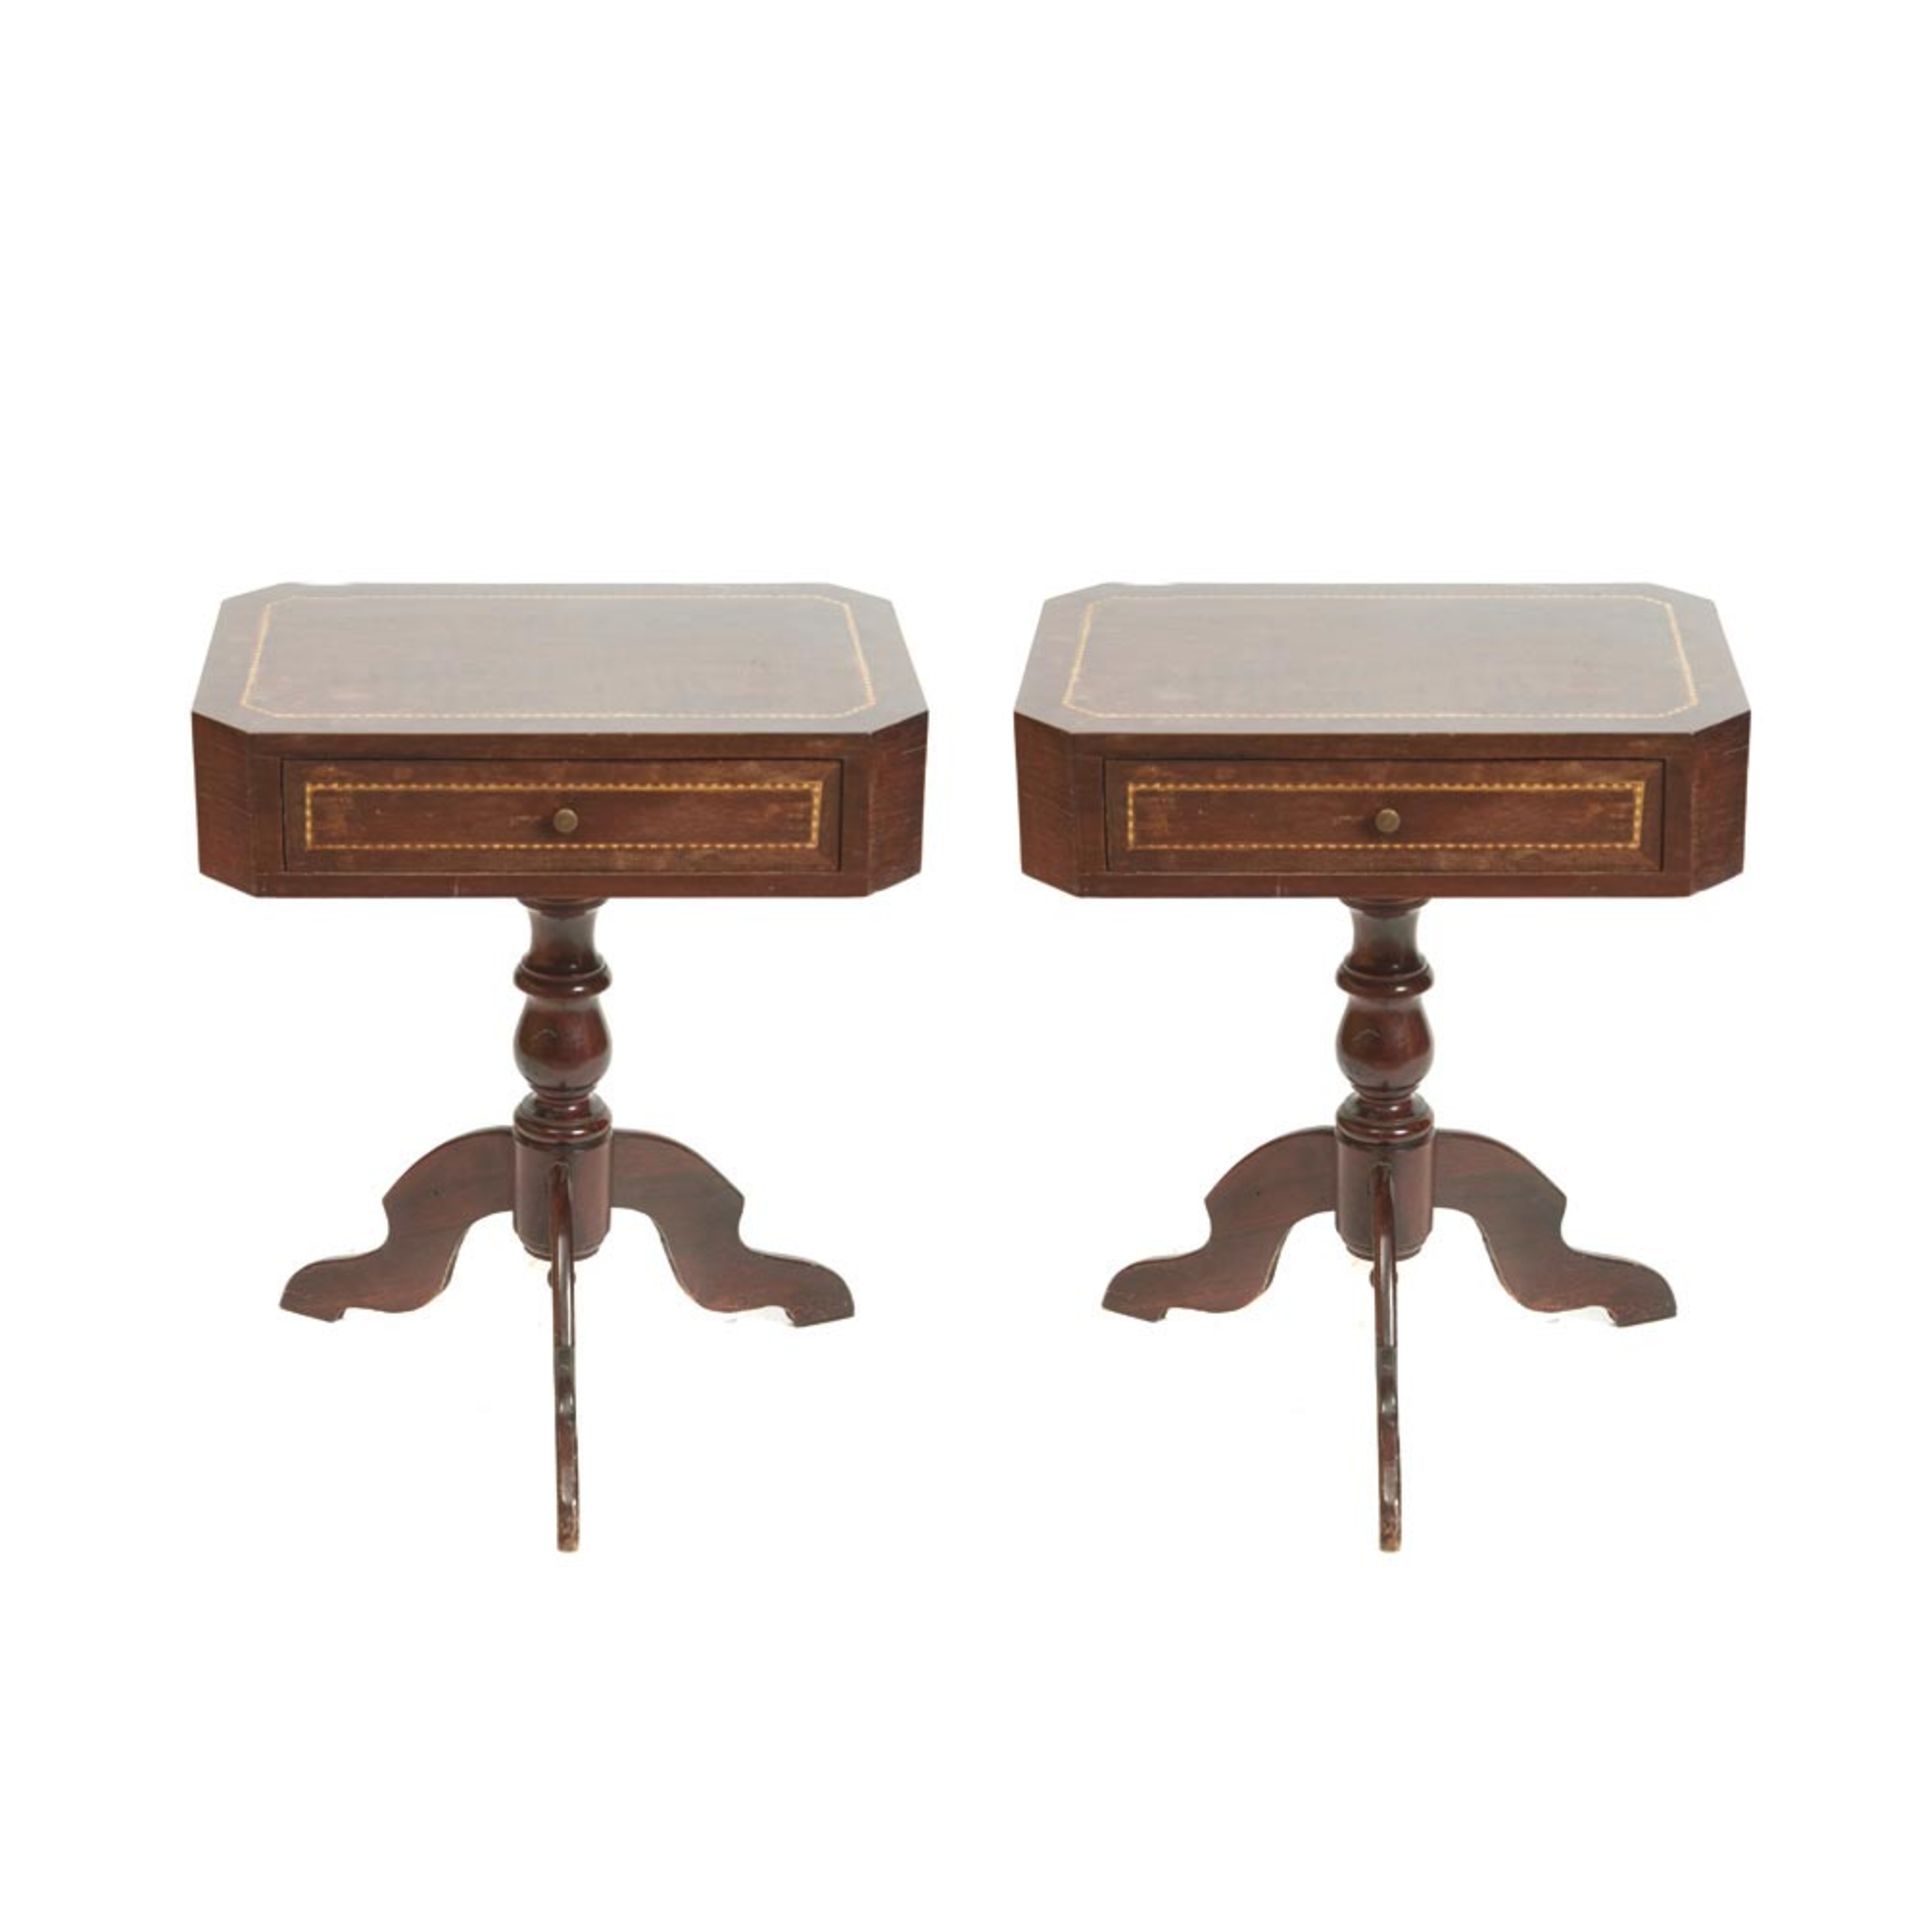 Isabelline mahogany wood pair tables 19th century. Pareja de mesitas isabelinas en madera de caoba